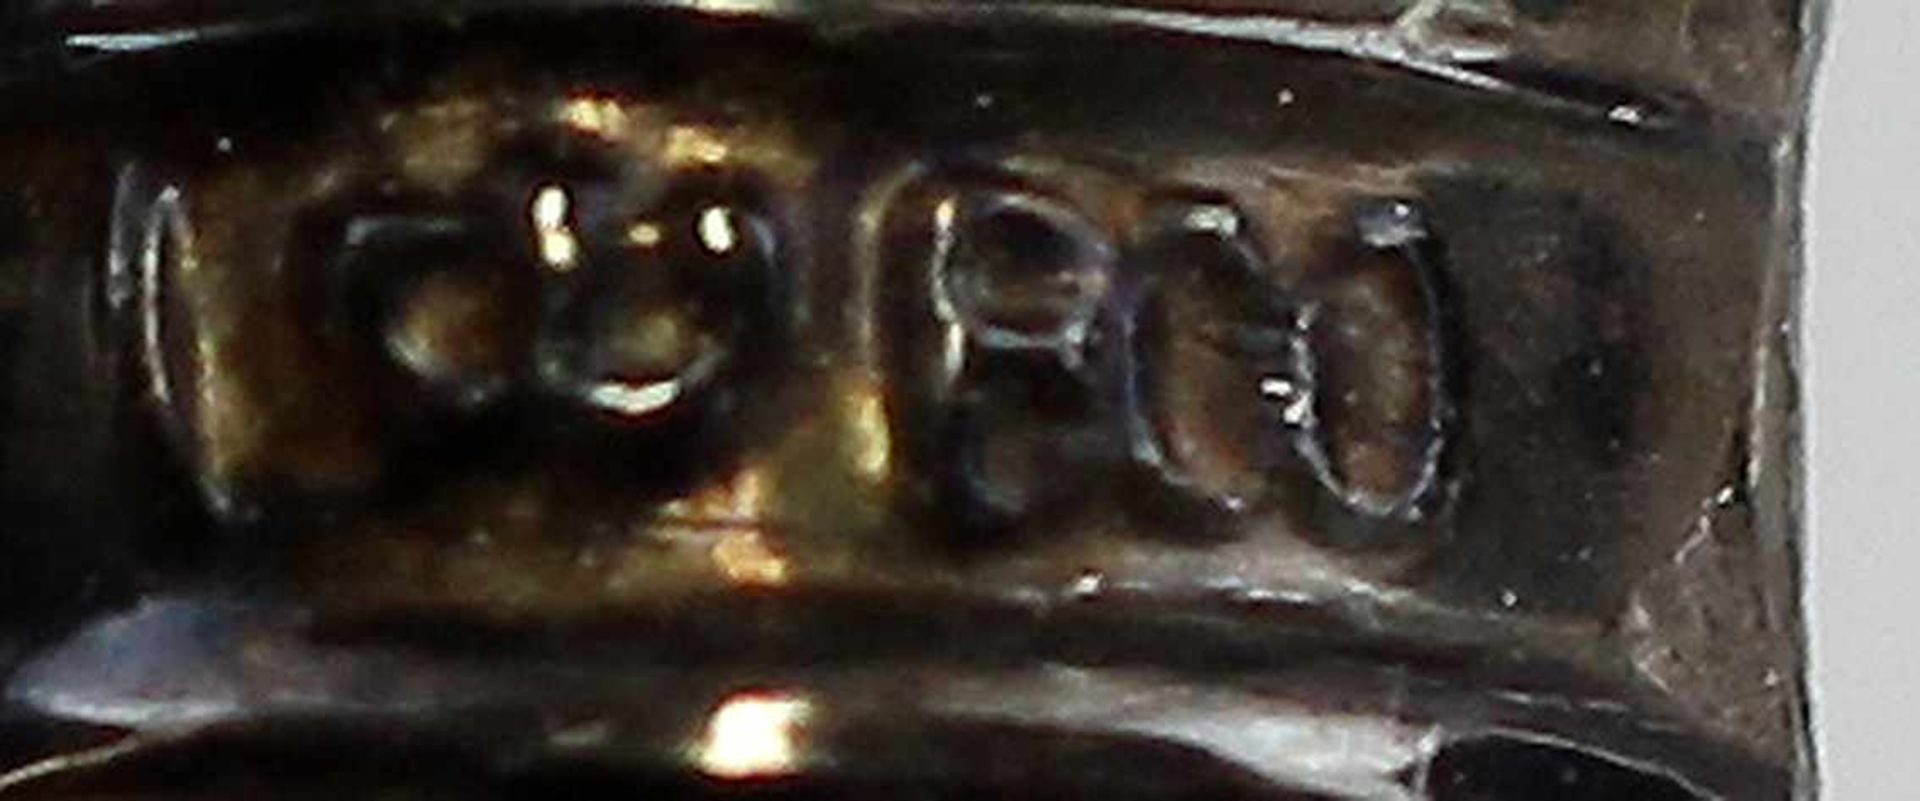 Silberne Vorlegegabel. Griff 800er Silber gepunzt mit Halbmond/Krone, reliefiert verziert, - Bild 2 aus 2